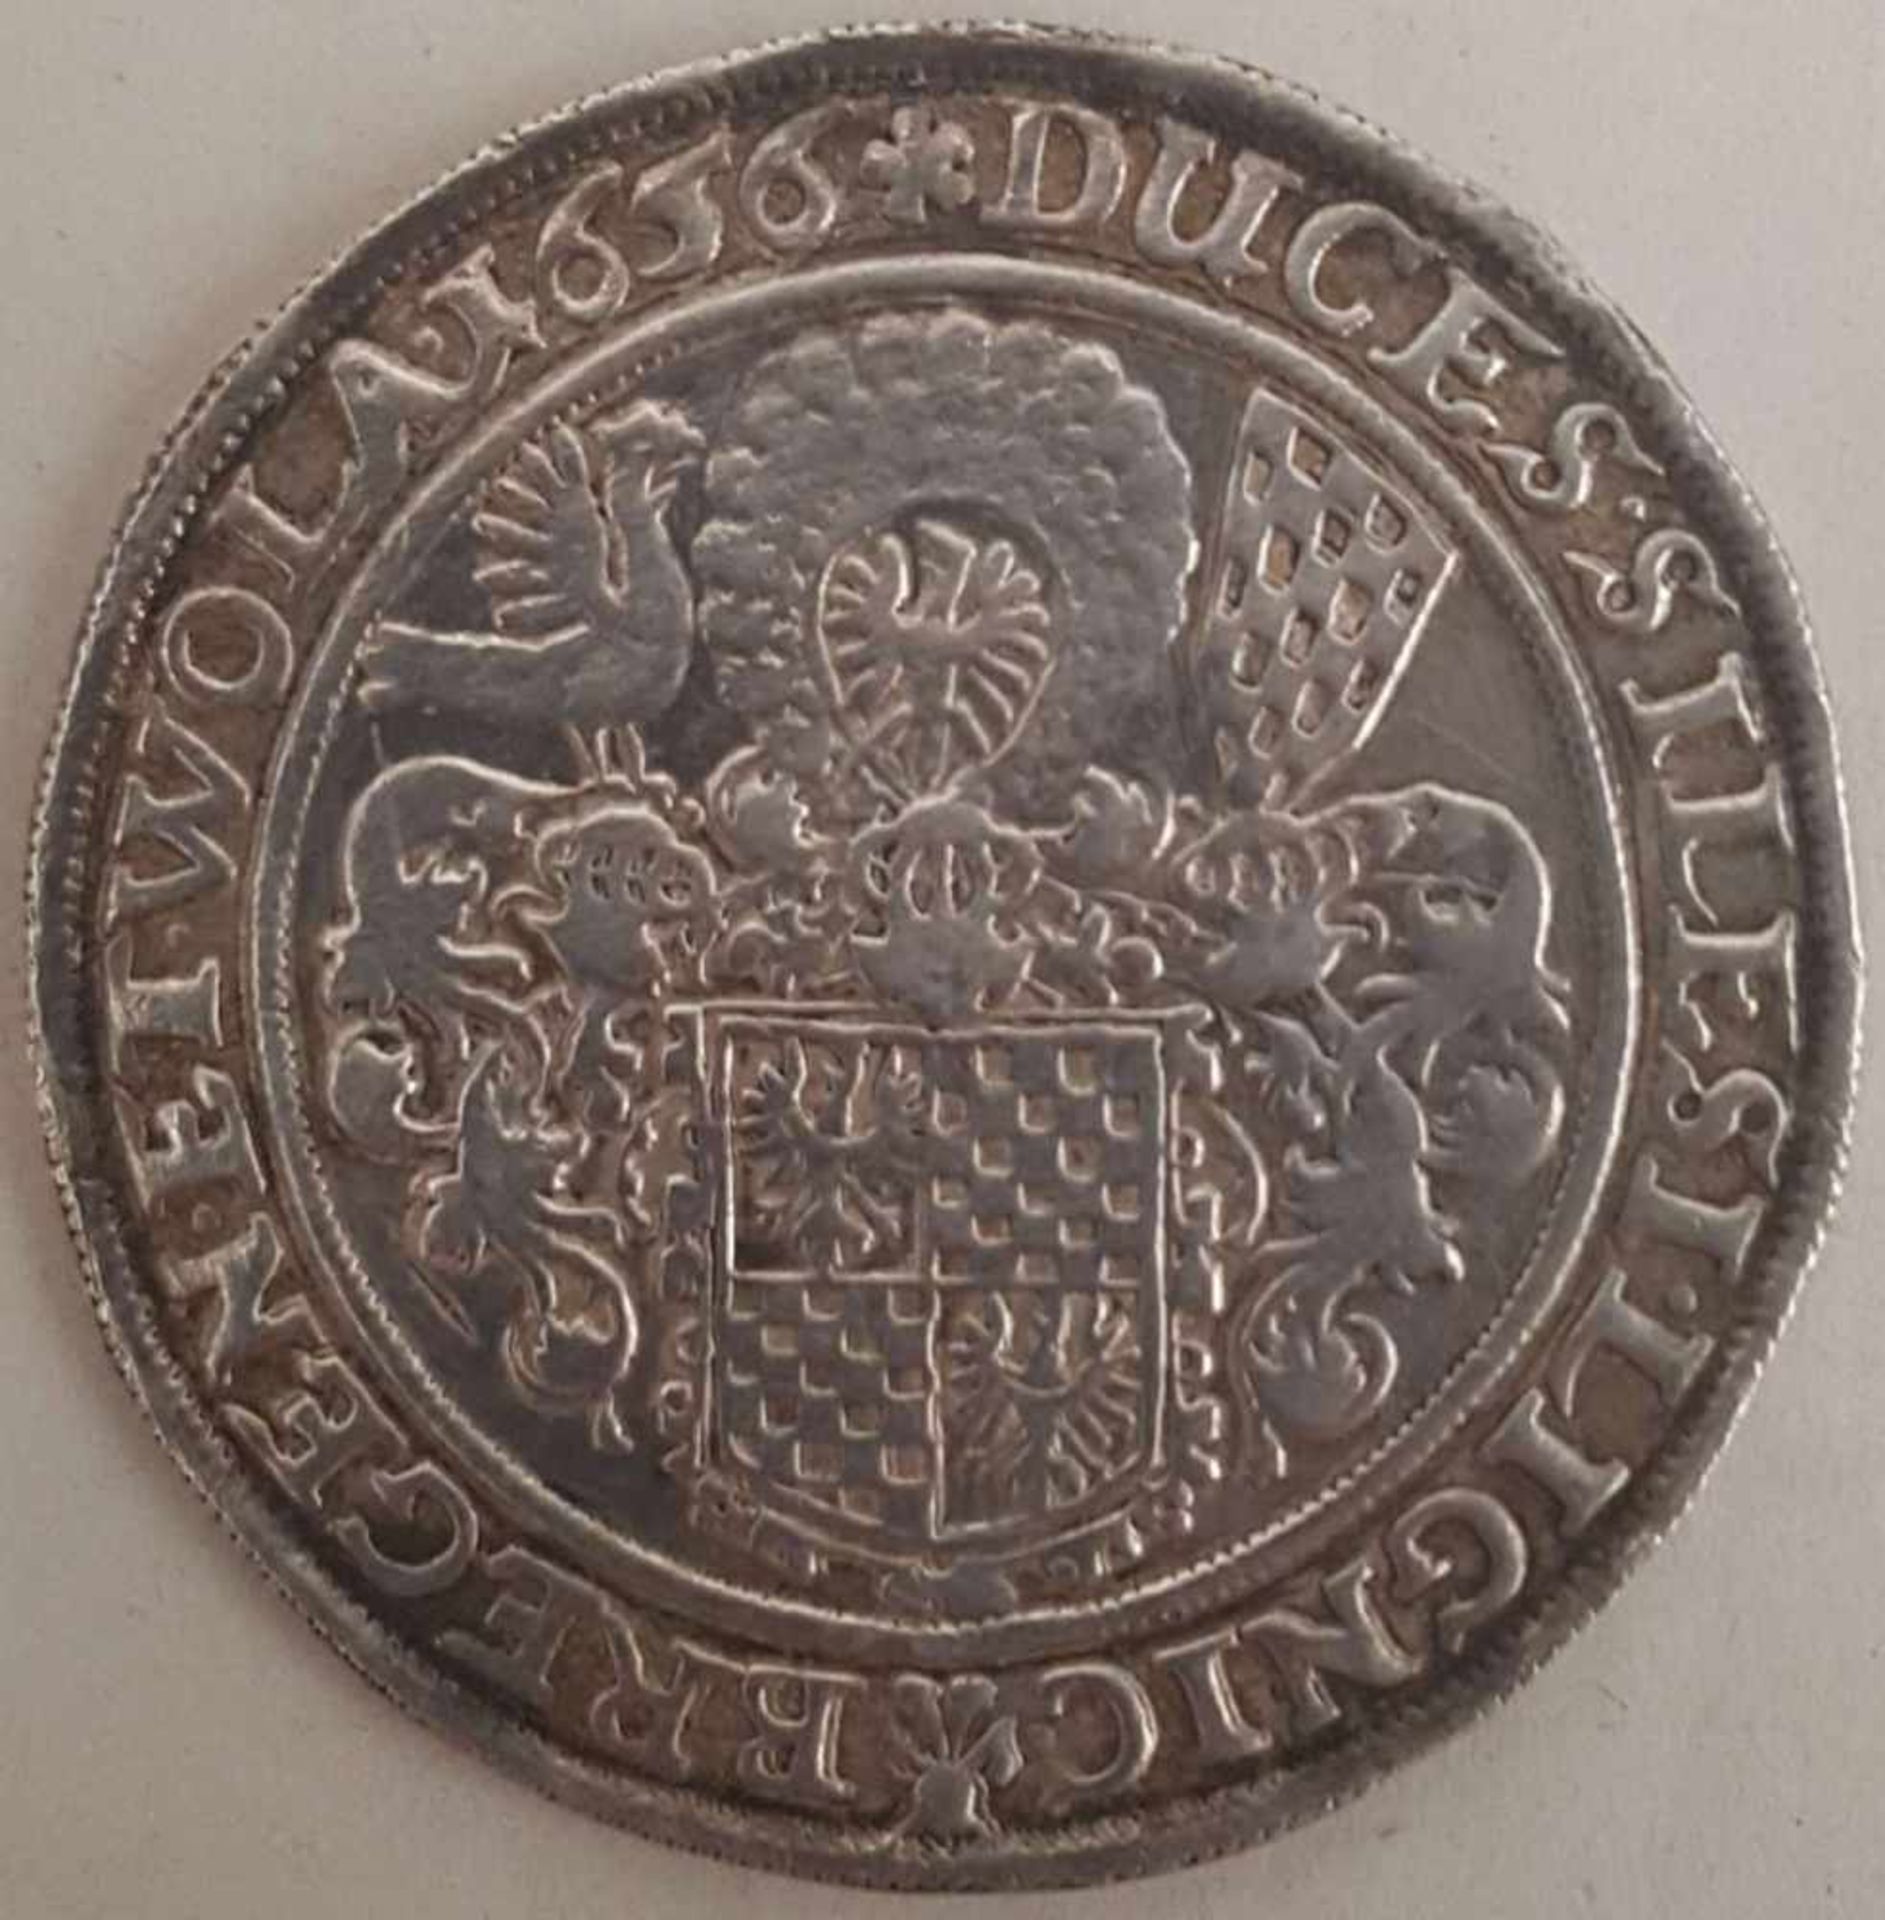 LIEGNITZ-BRIEG, Fürstentum, Georg III, Ludwig und Christian (1639-1663), 1/2 Reichstaler, Silber, - Bild 2 aus 2